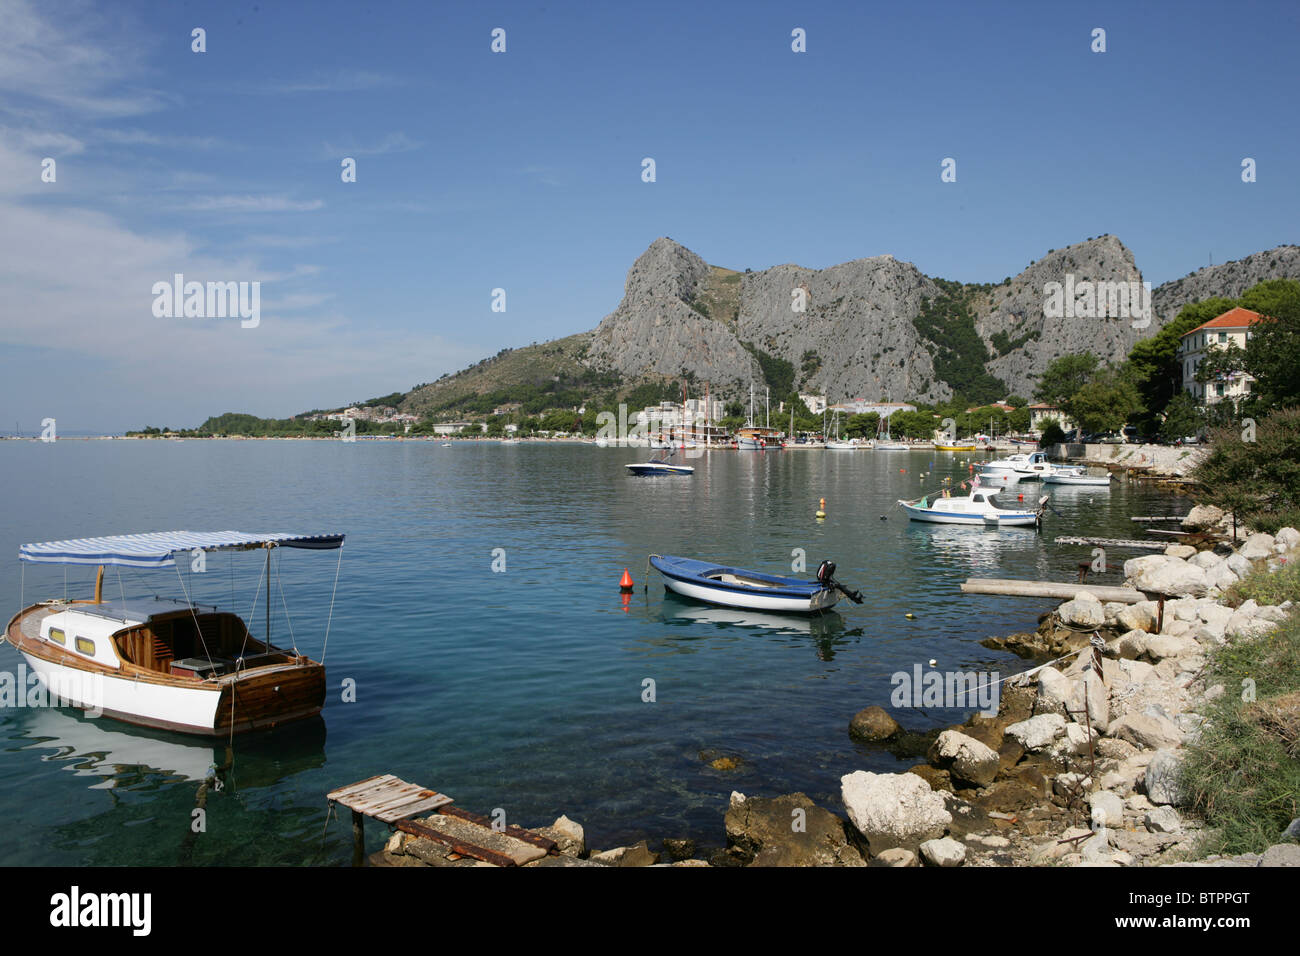 Una barca sulla spiaggia vicino alla città vecchia di Omis Croazia Foto Stock